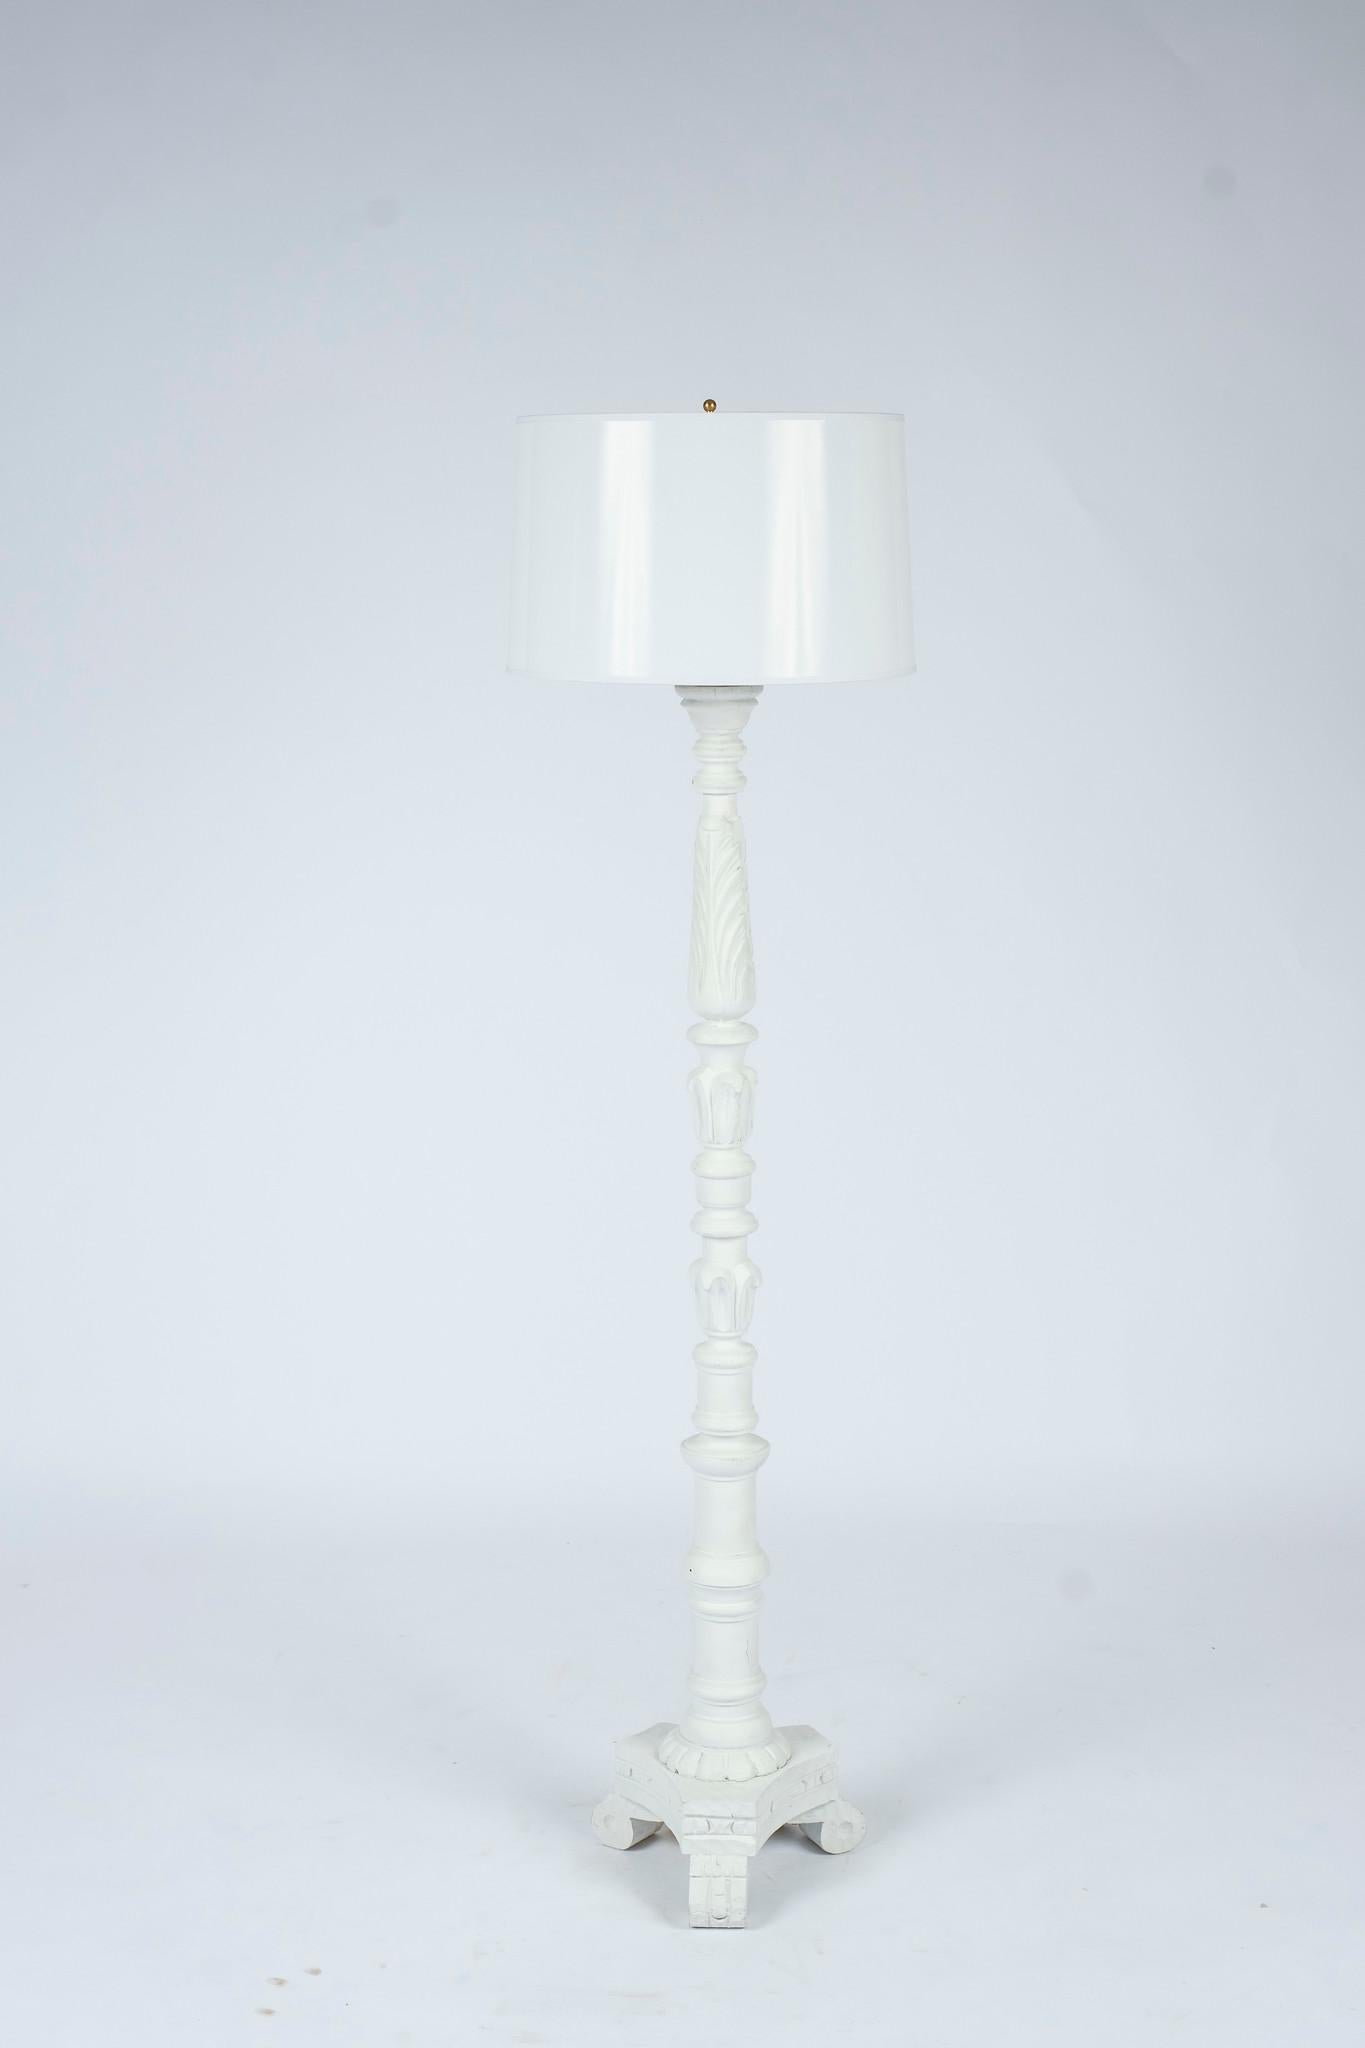 Lampadaires italiens vintage sculptés en gesso, nouvellement peints en blanc dans le style de Serge Roche, présentés avec des abat-jour en papier blanc de 16